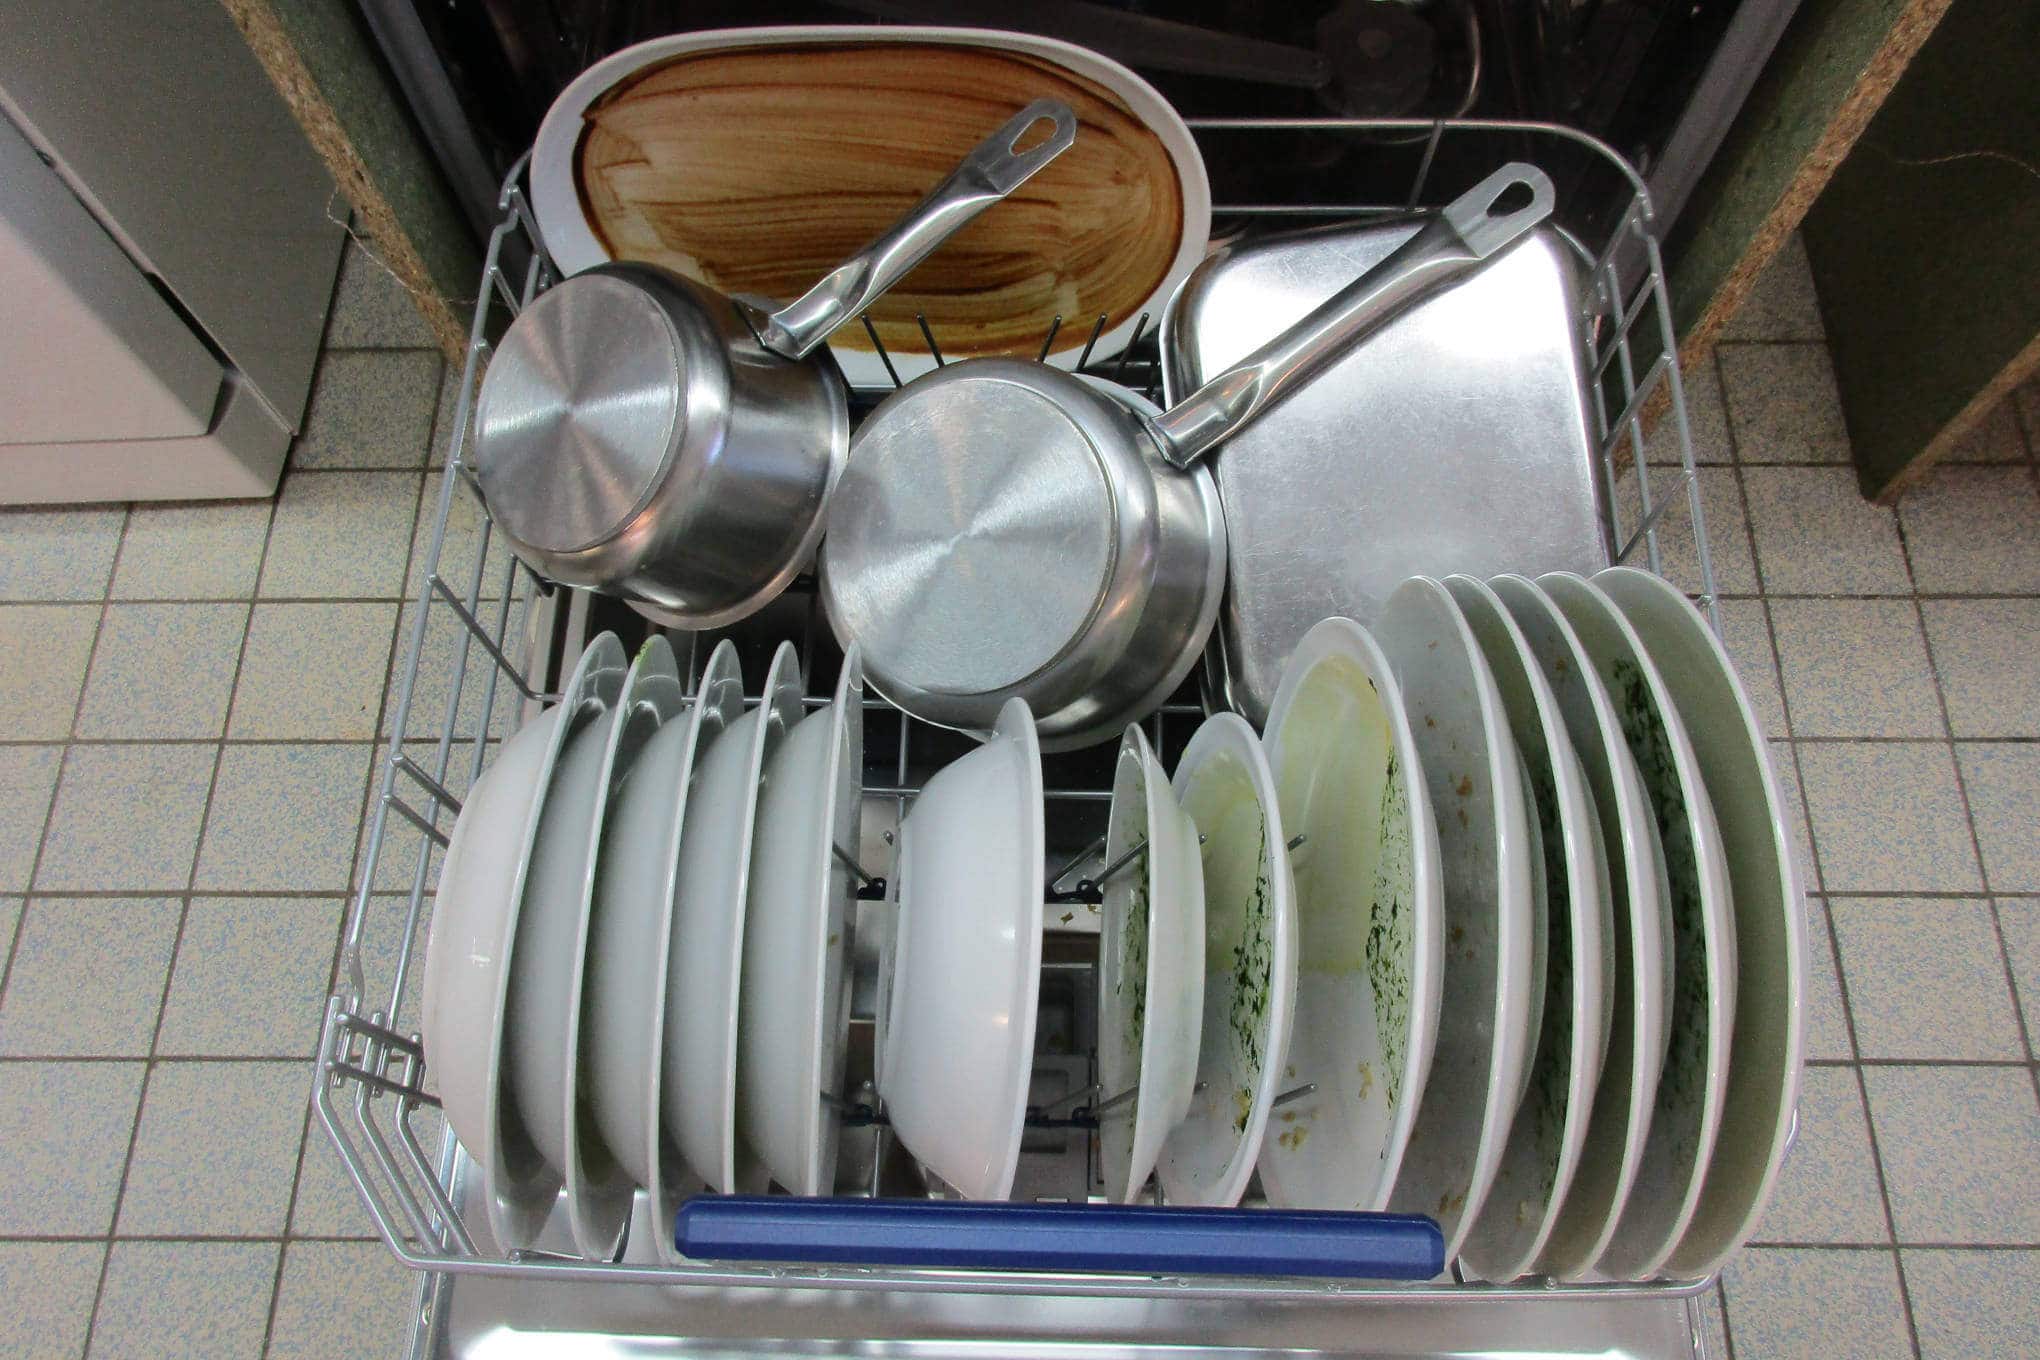 Auki oleva kalustepeitteinen astianpesukone, jonka sisällä on likaisia astioita.